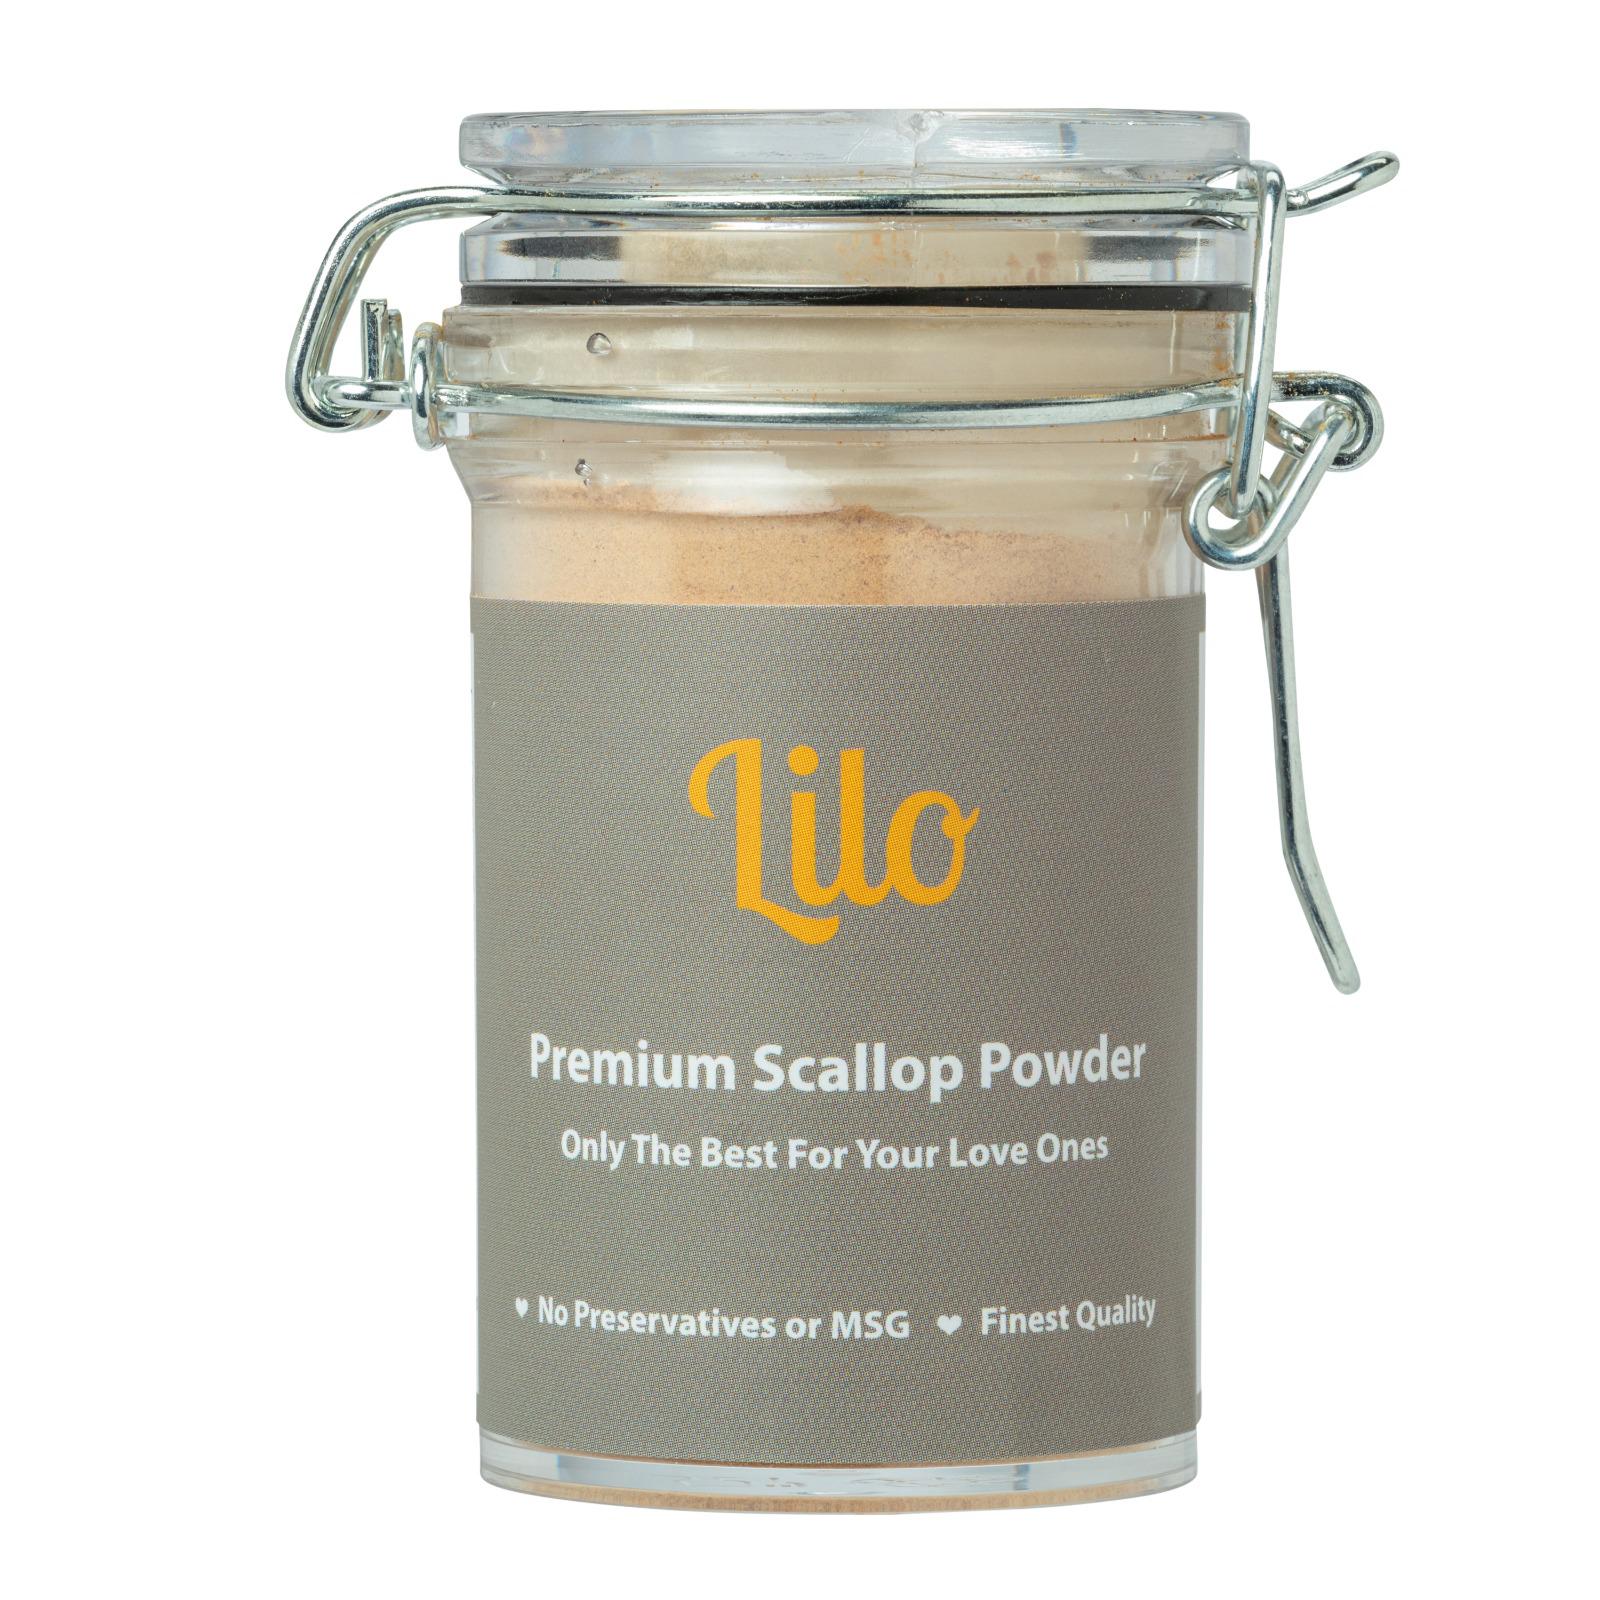 Lilo Premium Scallop Powder Bottle 50g